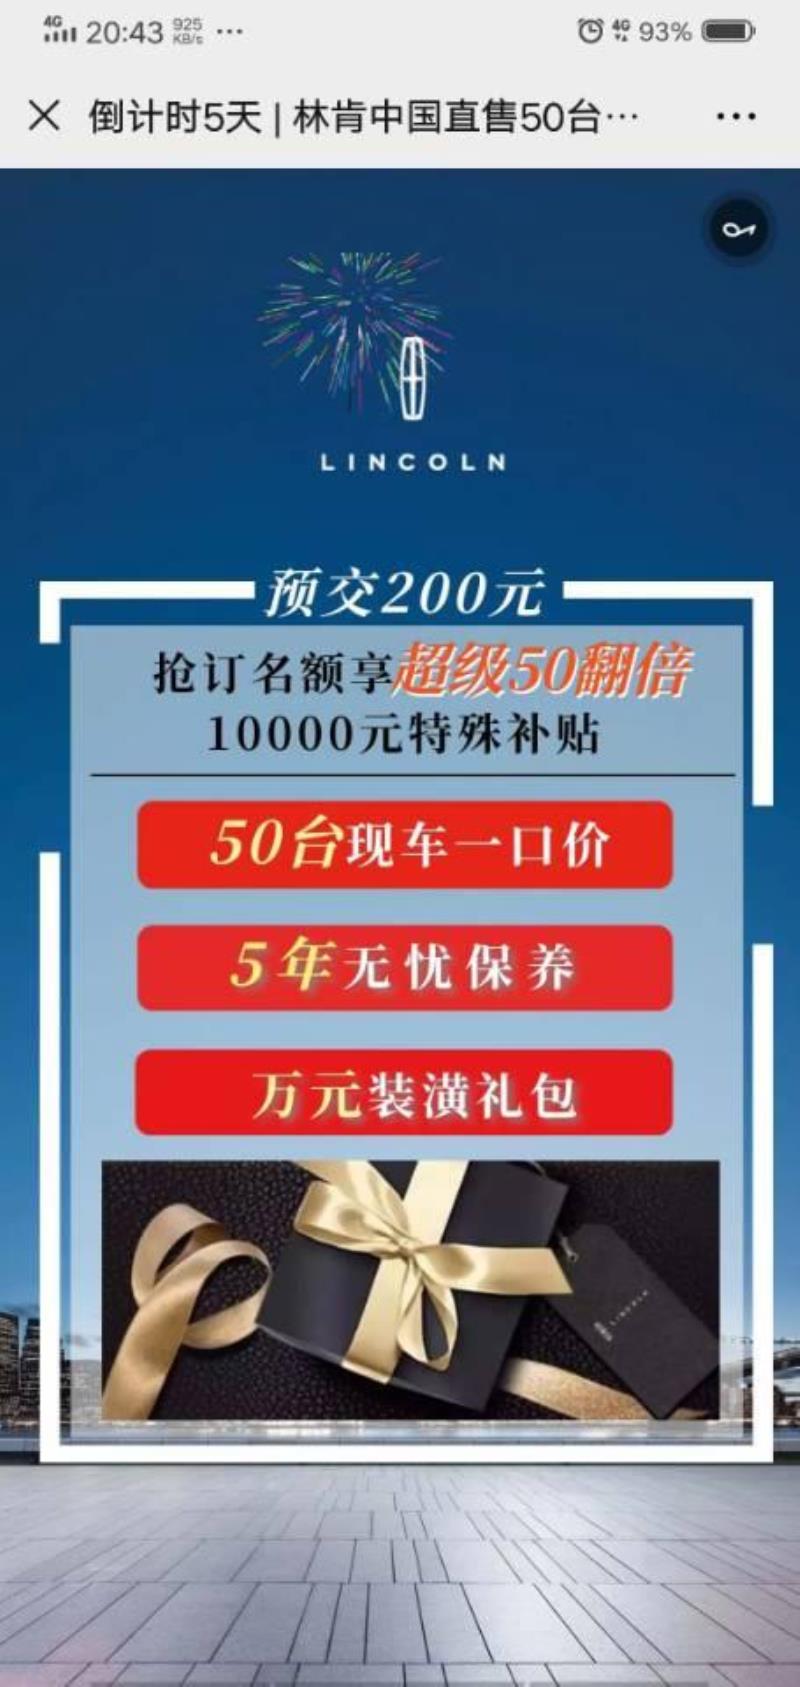 林肯mkz，深圳这周有活动，有一起买的吗，争取点优惠